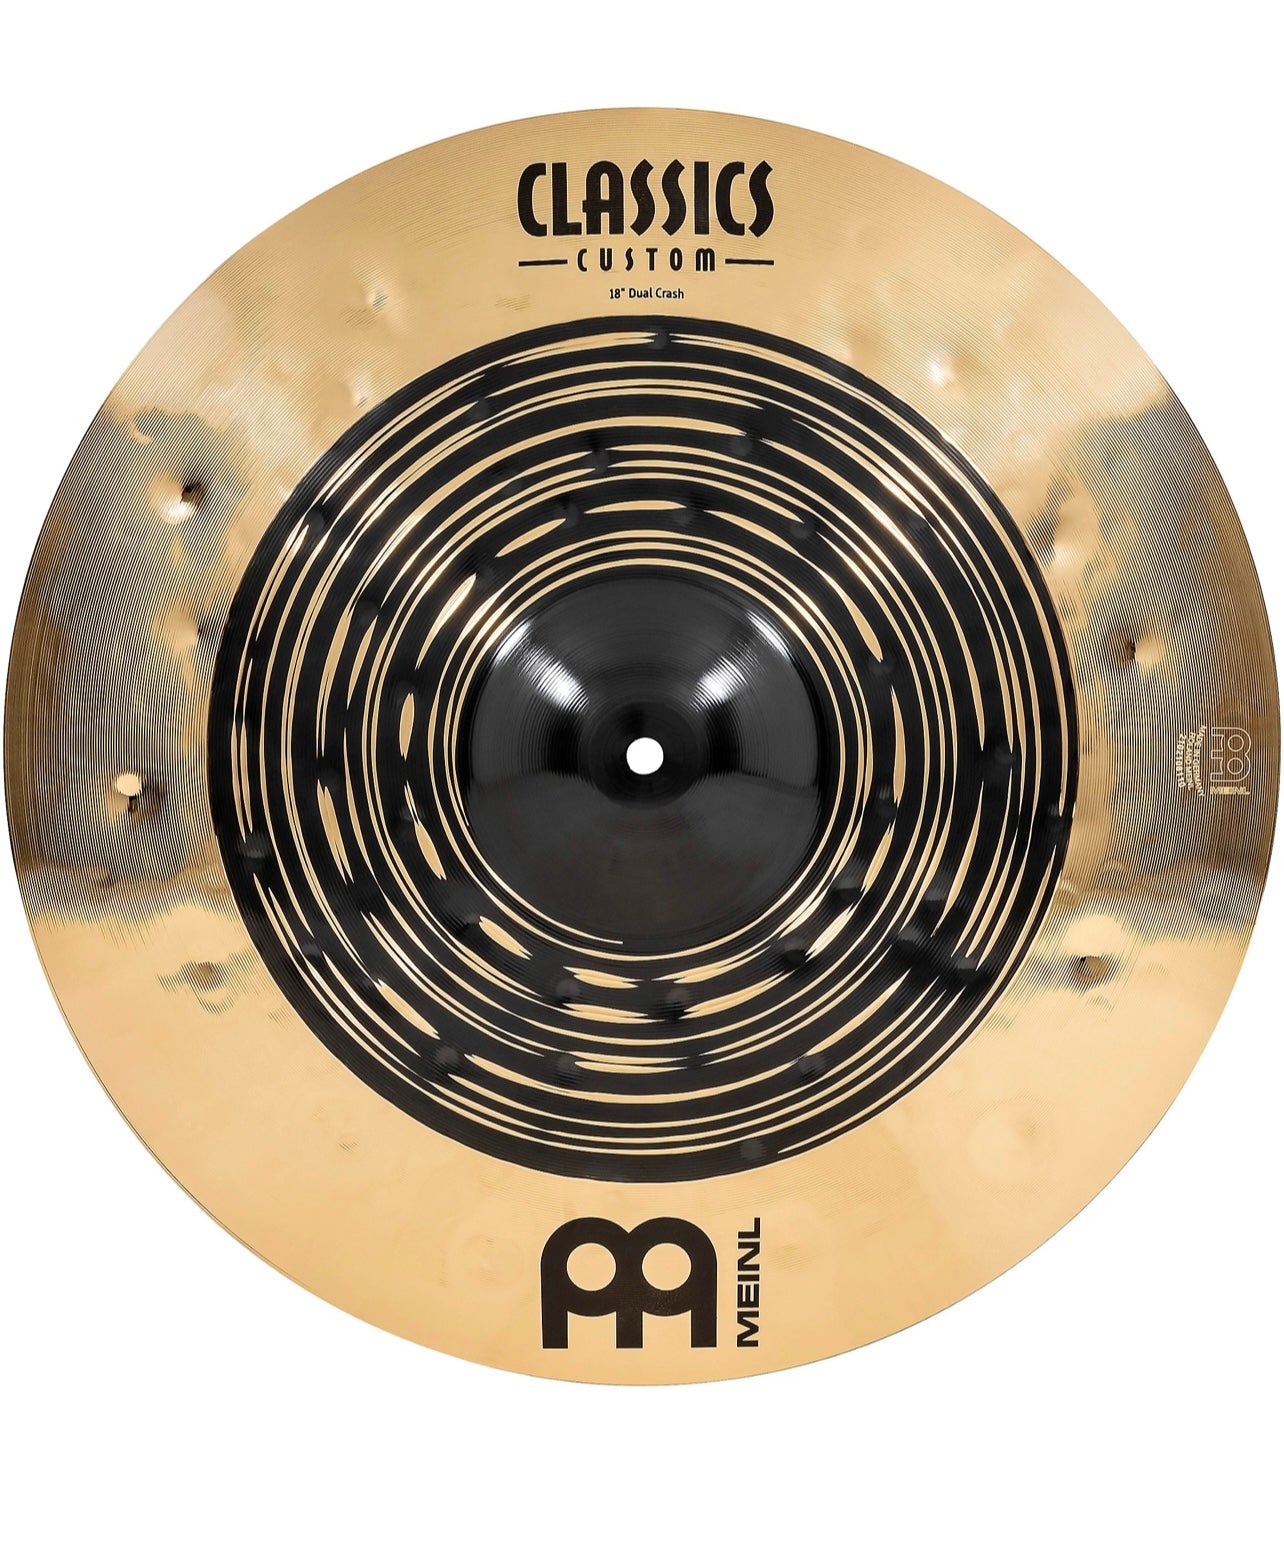 Meinl Classics Custom 18” Dual Crash Cymbal